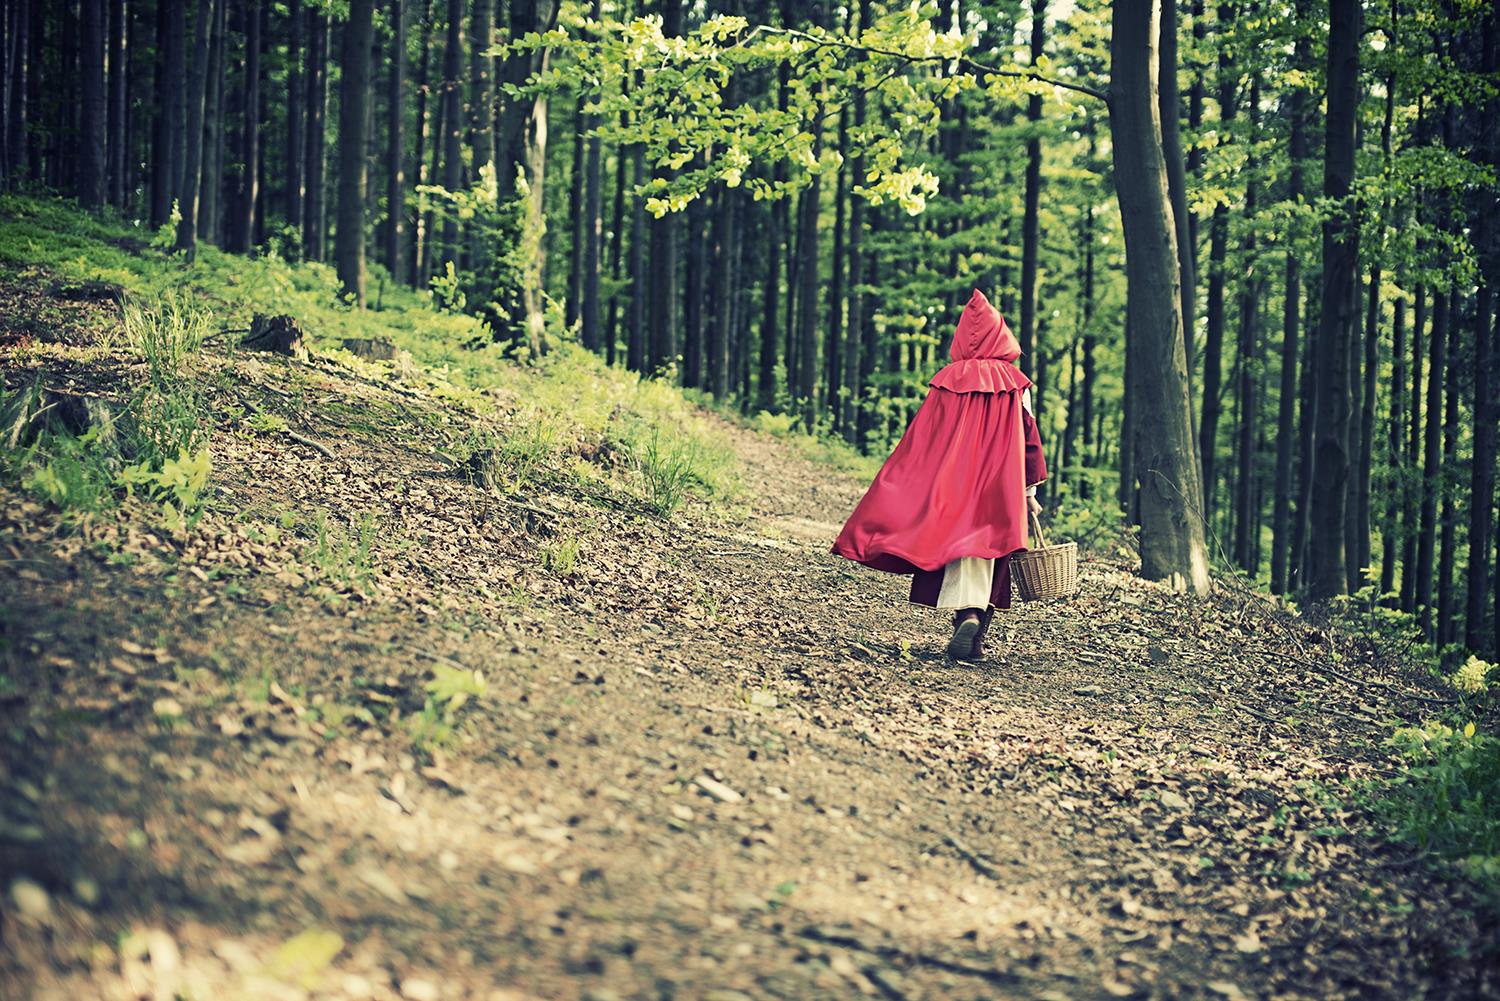 Bambina vestita come Cappuccetto rosso in un bosco